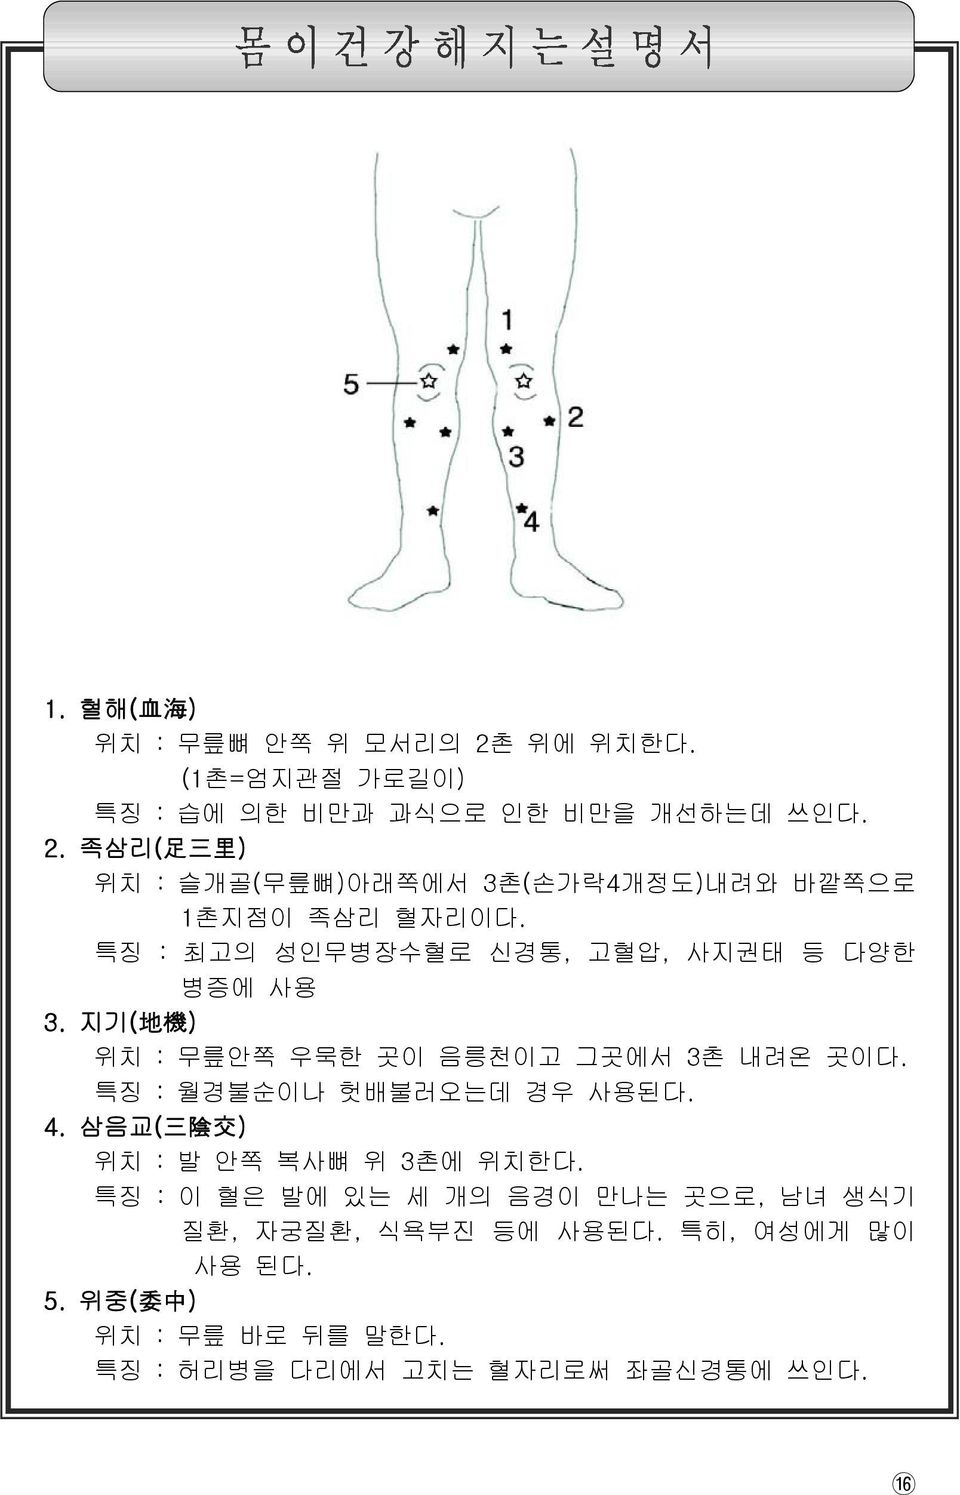 특징 : 월경불순이나 헛배불러오는데 경우 사용된다. 4. 삼음교( 三 陰 交 ) 위치 : 발 안쪽 복사뼈 위 3촌에 위치한다.